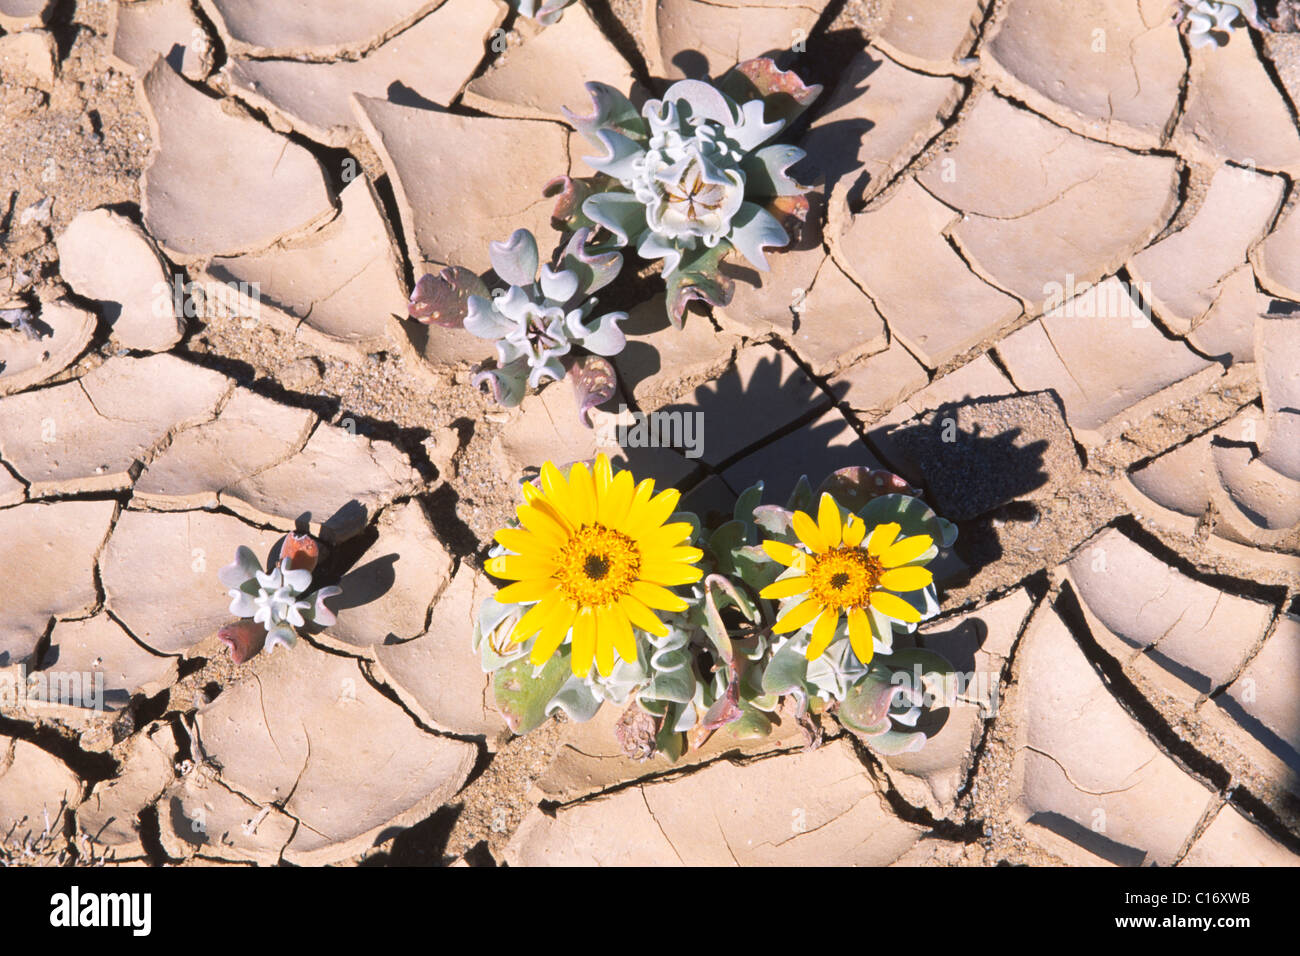 Fleurs jaunes en fleurs dans le sol du désert desséché, Namibie, Afrique Banque D'Images